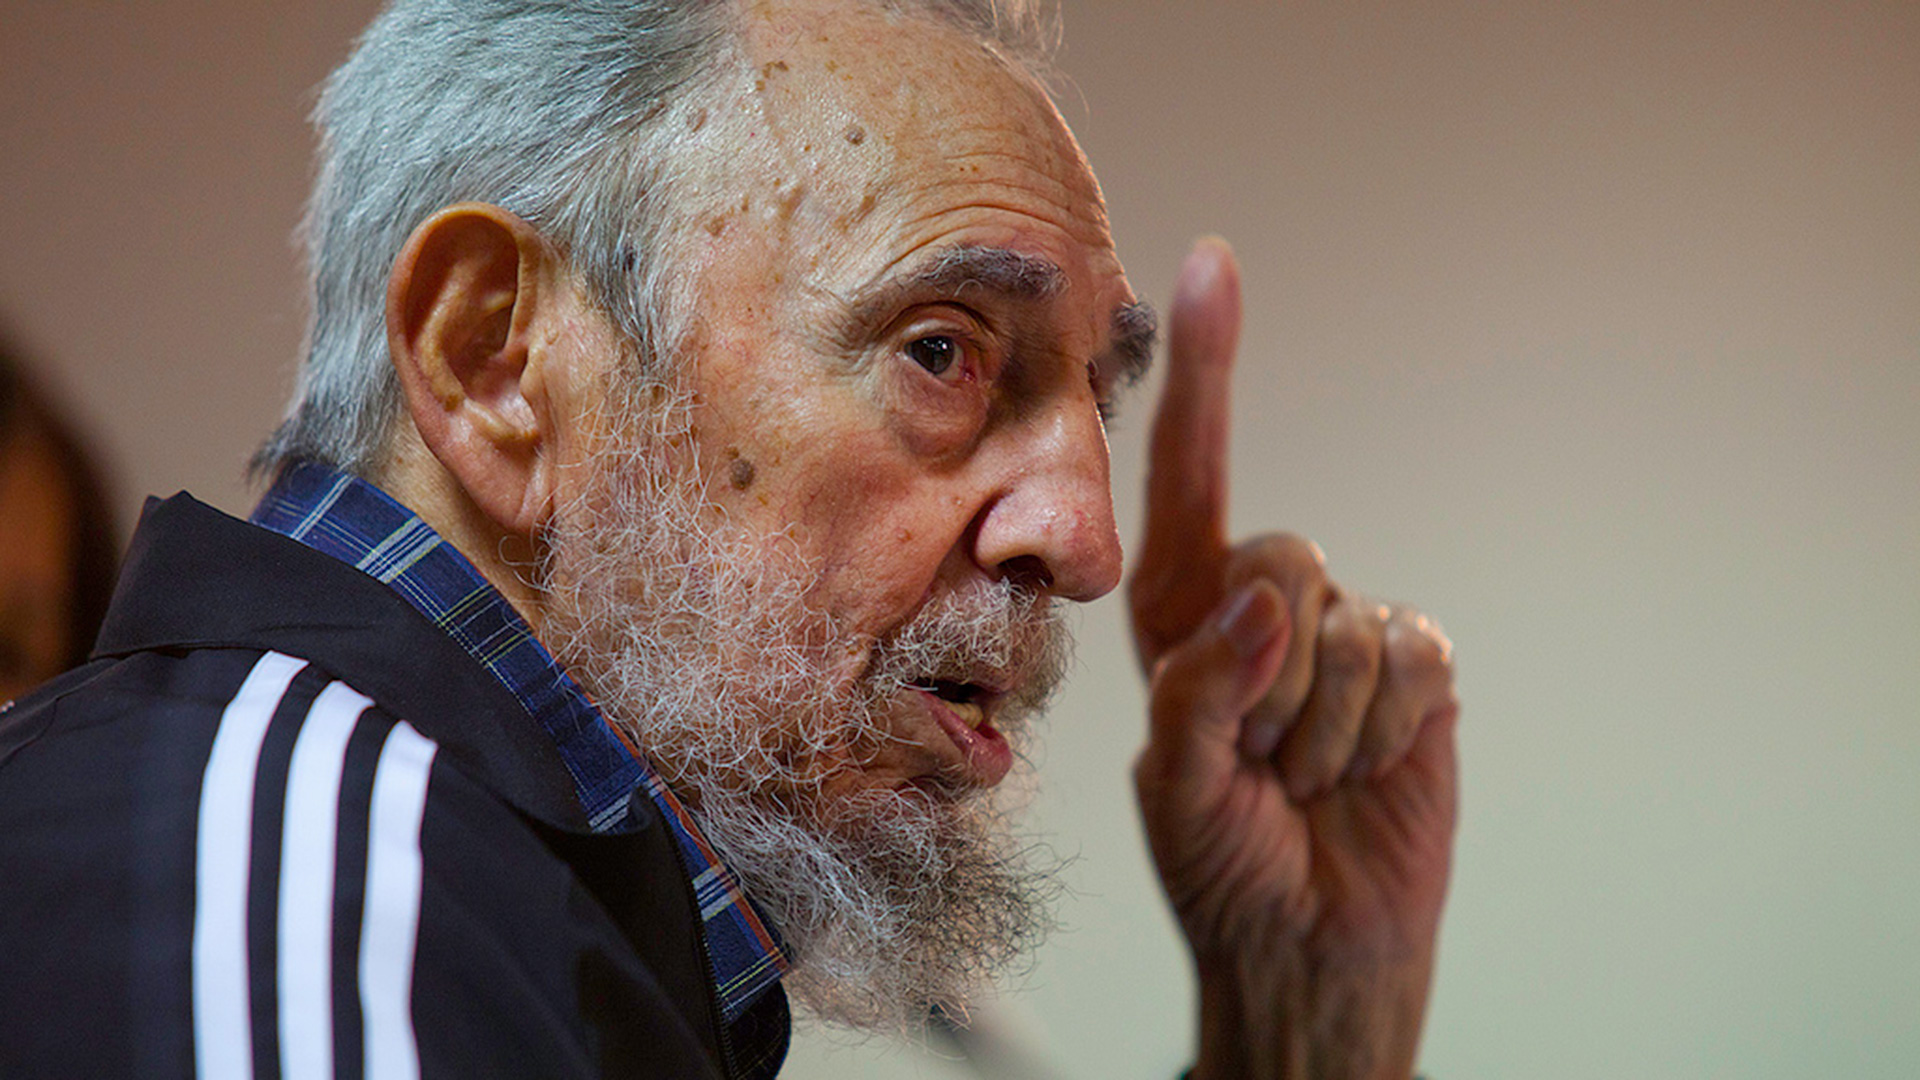 Los enfrentamientos con Fidel Castro fueron la causa del bloqueo. | Foto: Handout/Reuters